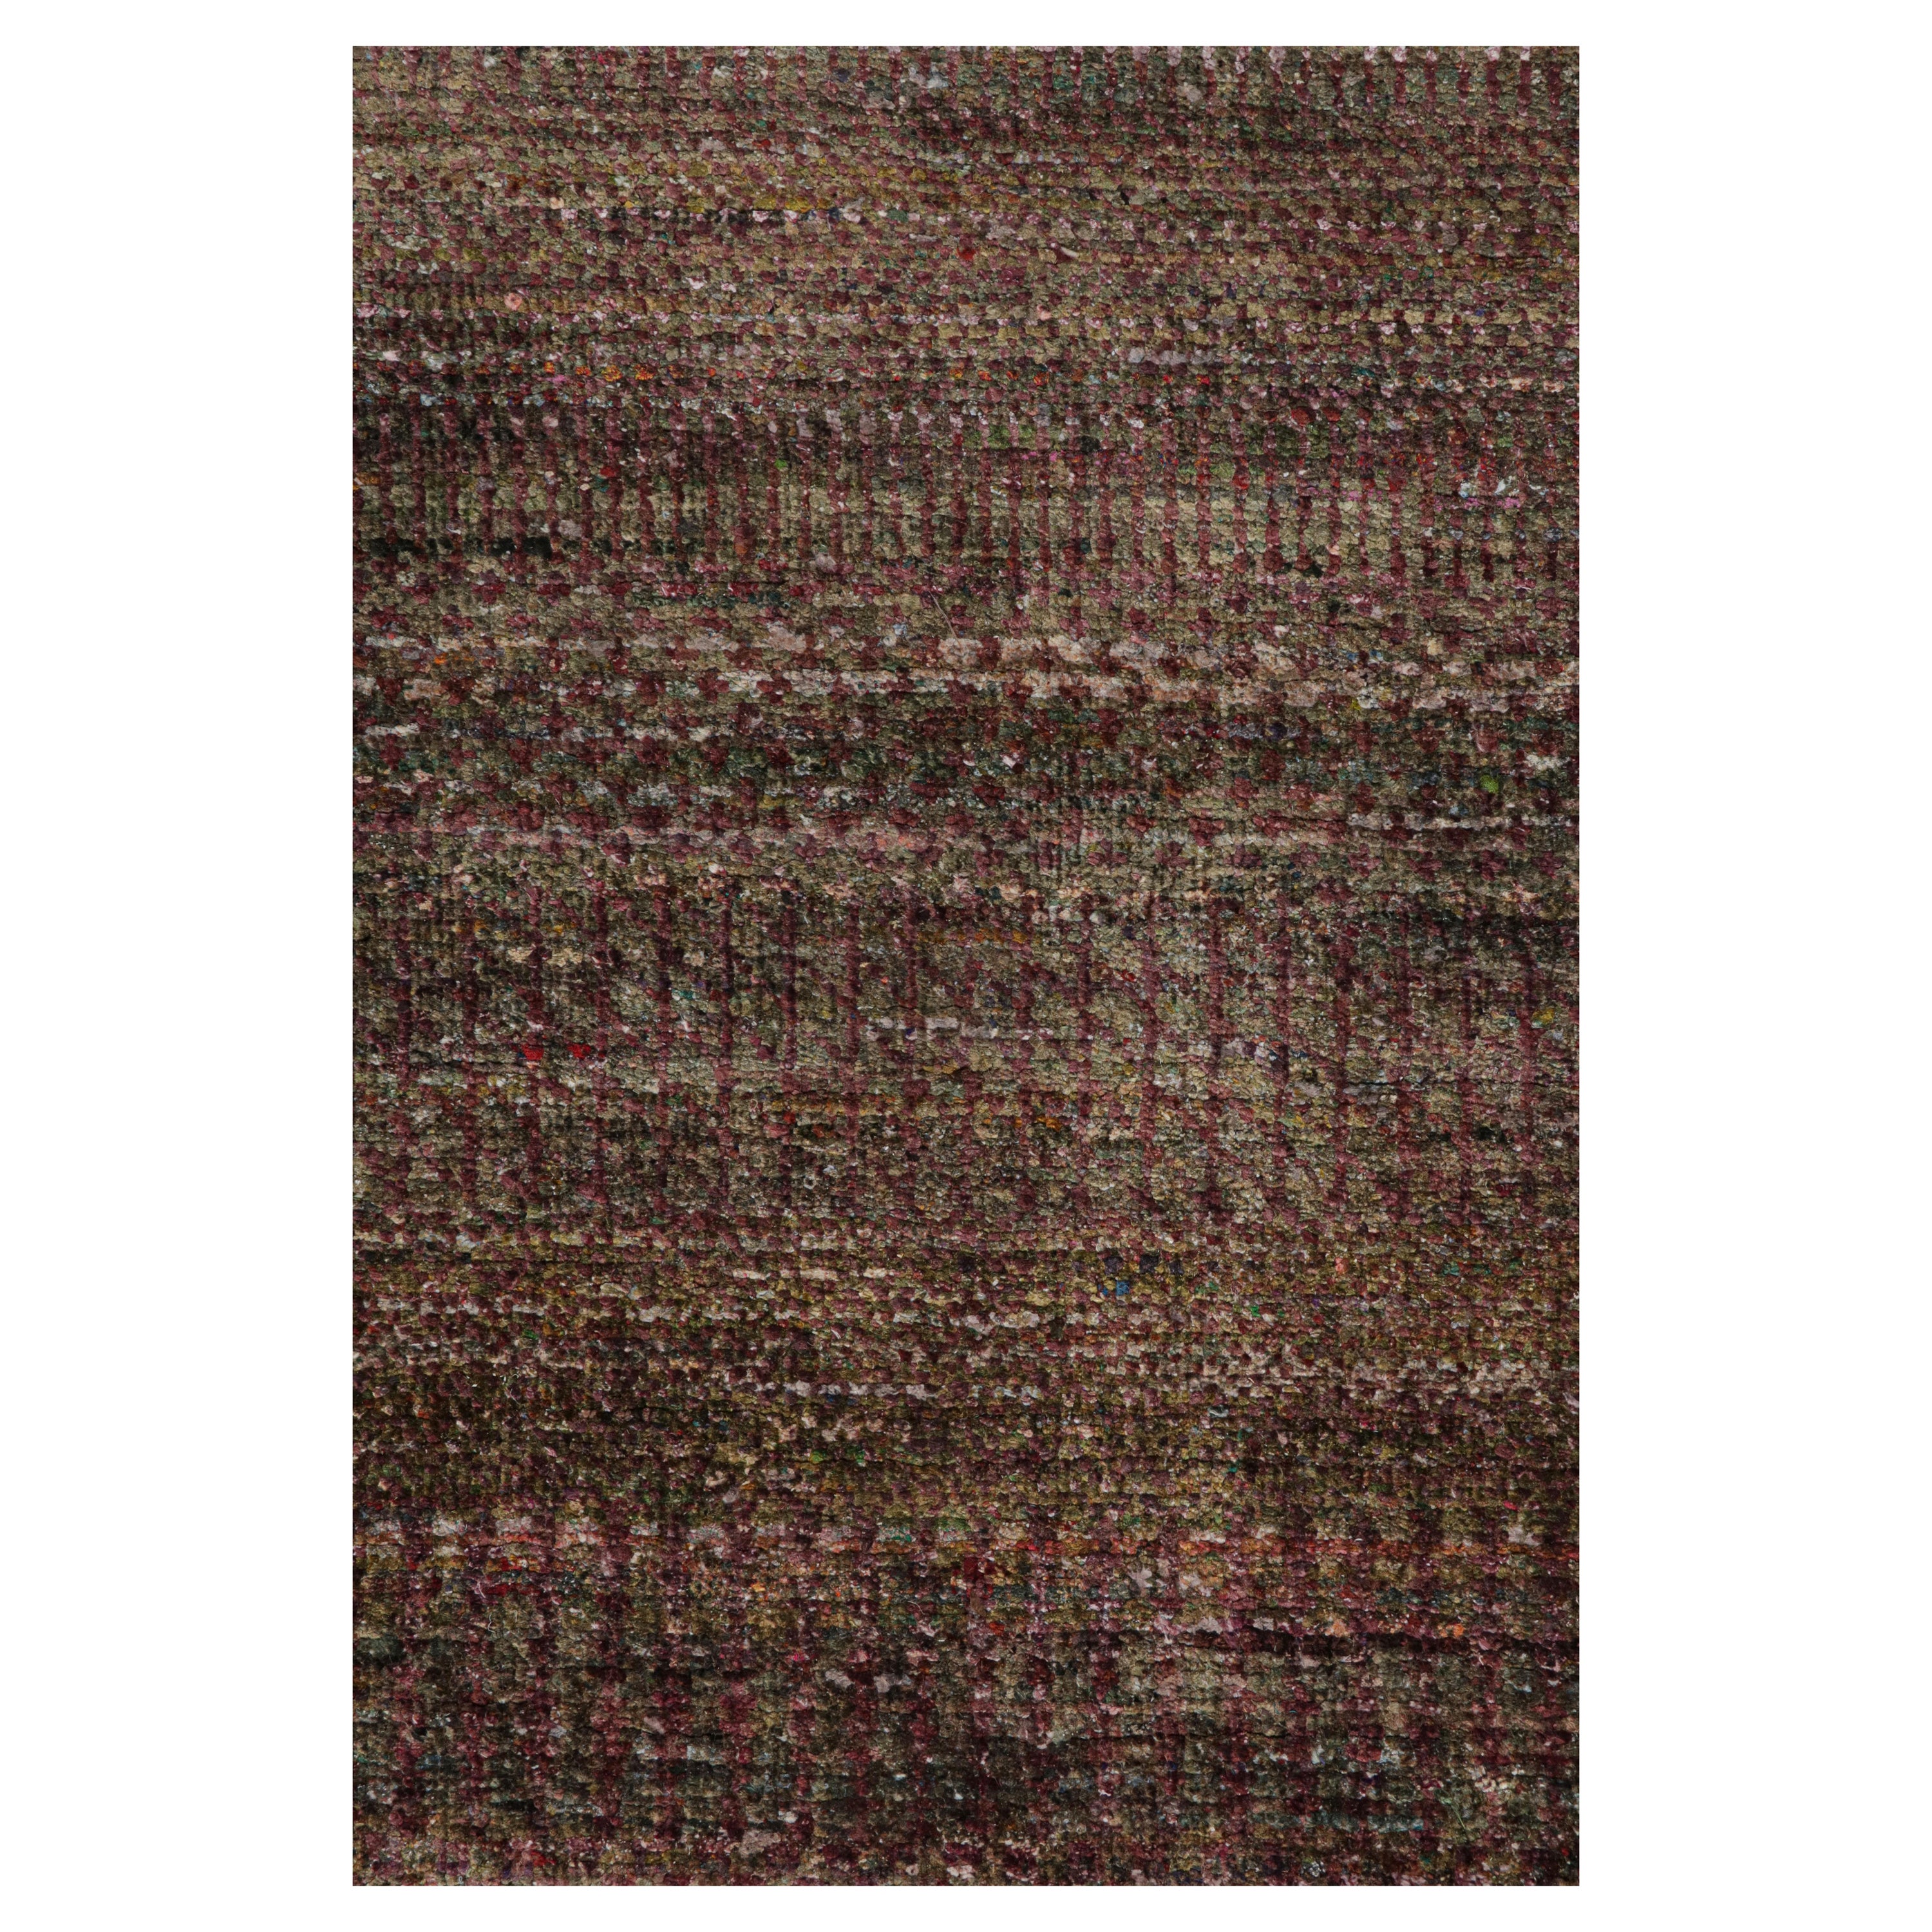 Tapis texturé de Rug & Kilim dans des tons violets et des rayures polychromes